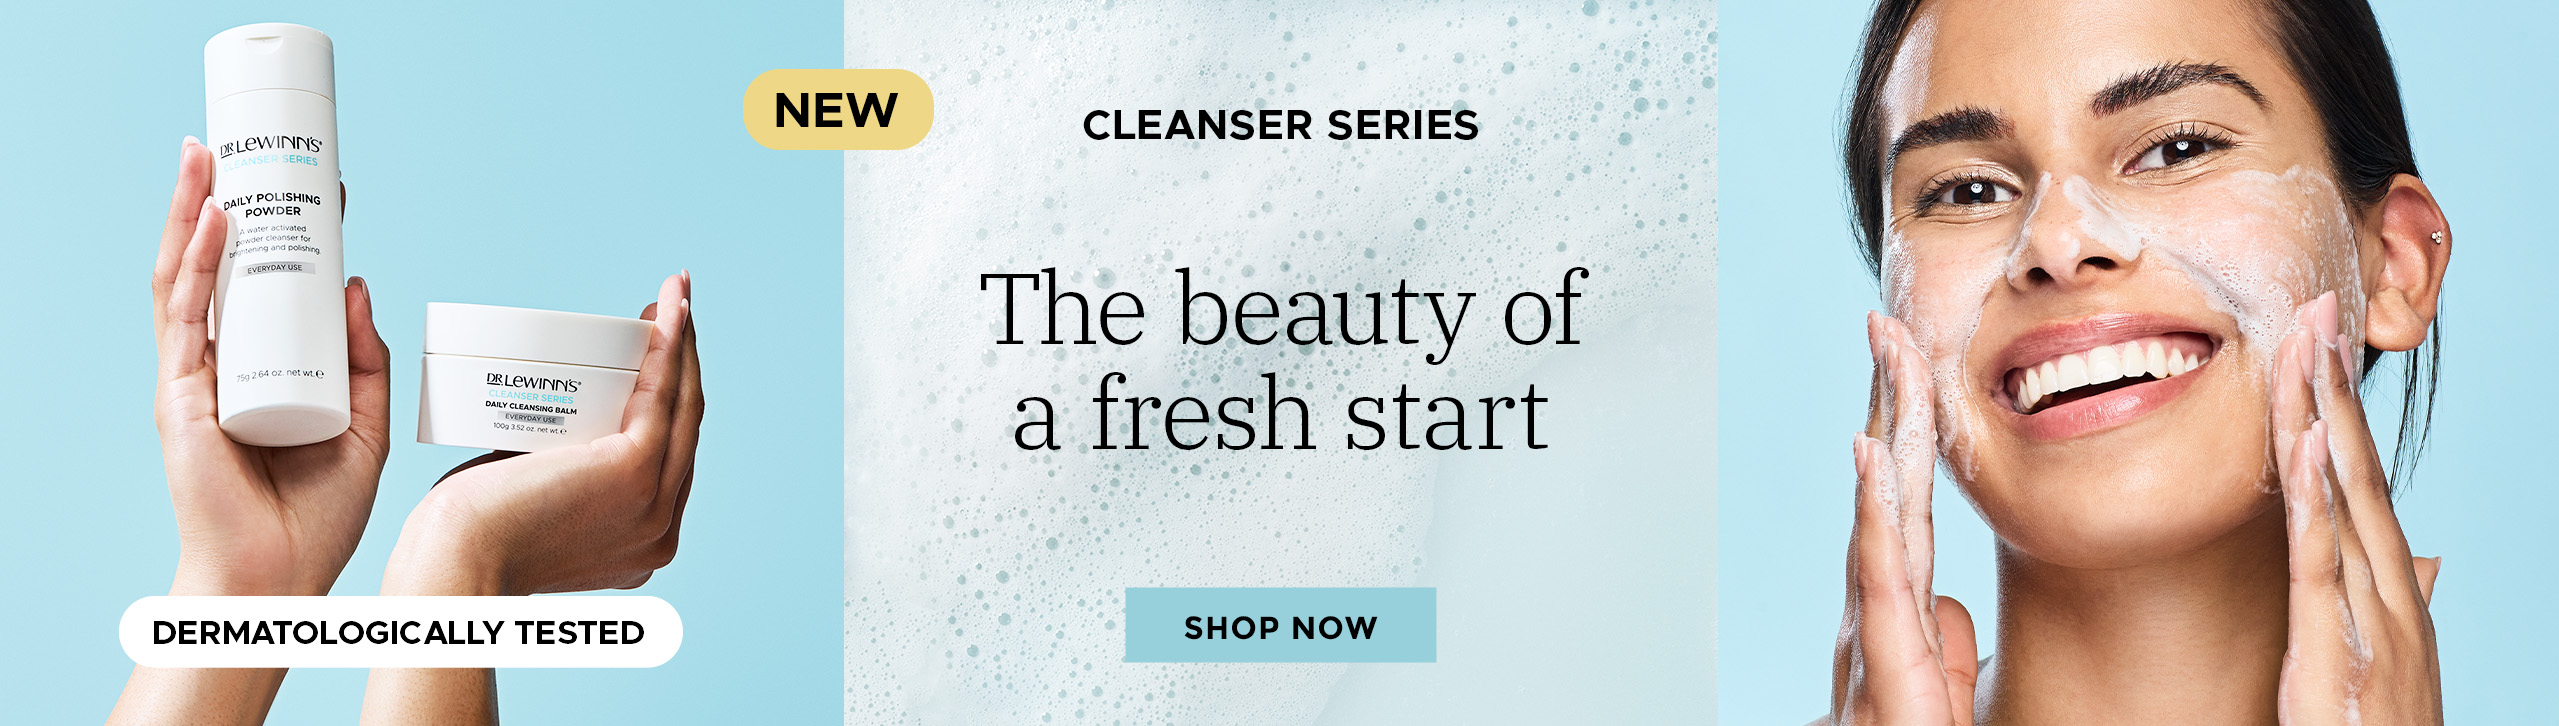 Discover Dr. LeWinn's Cleanser Series